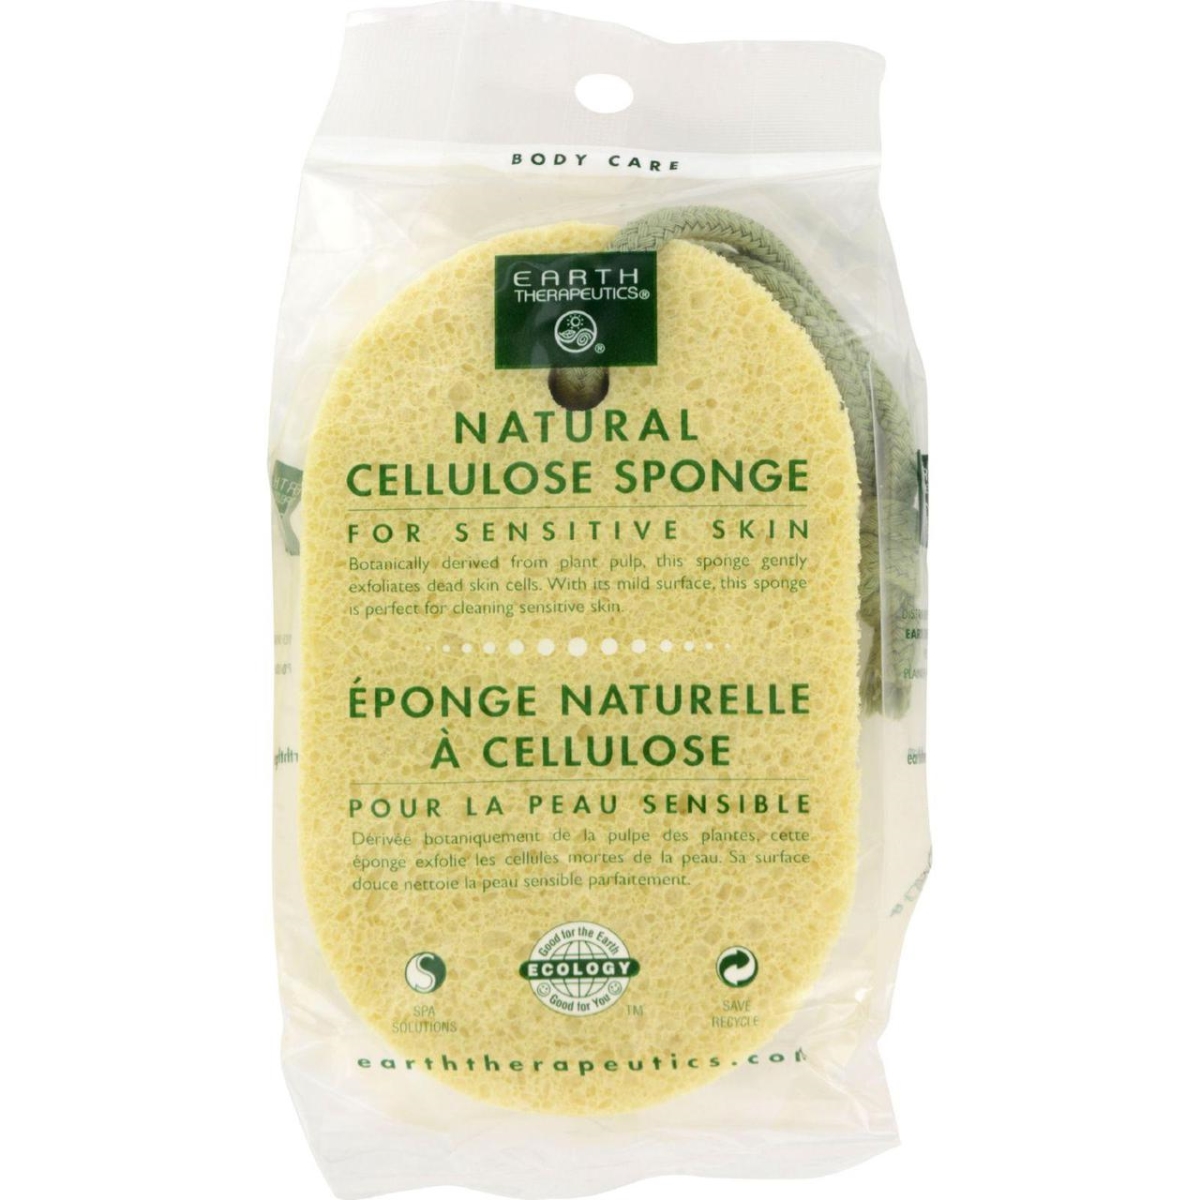 Hg0755363 Natural Cellulose Sponge